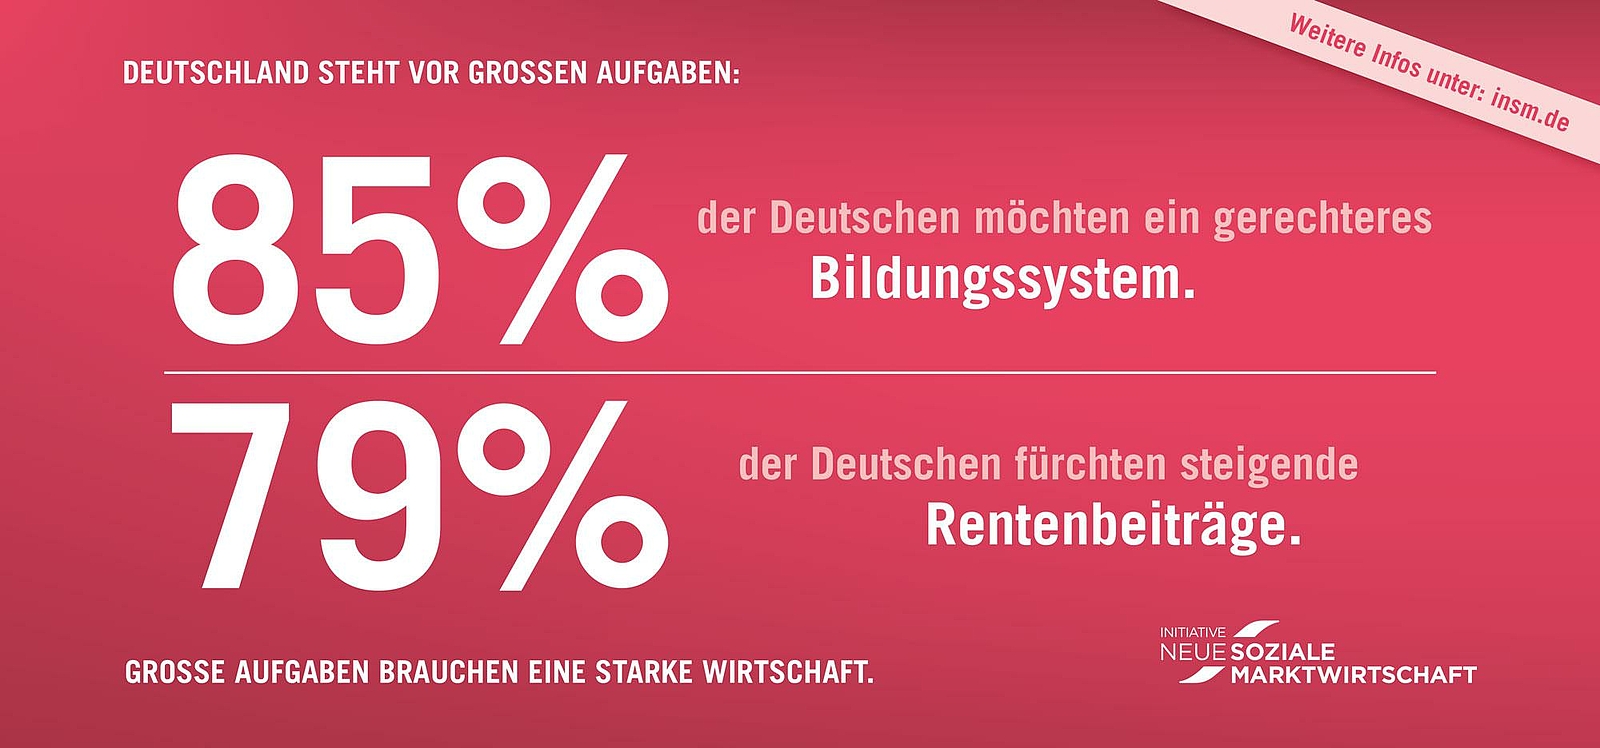 Anzeigenmotiv der INSM - 85% der Deutschen möchten ein gerechteres Bildungssystem.